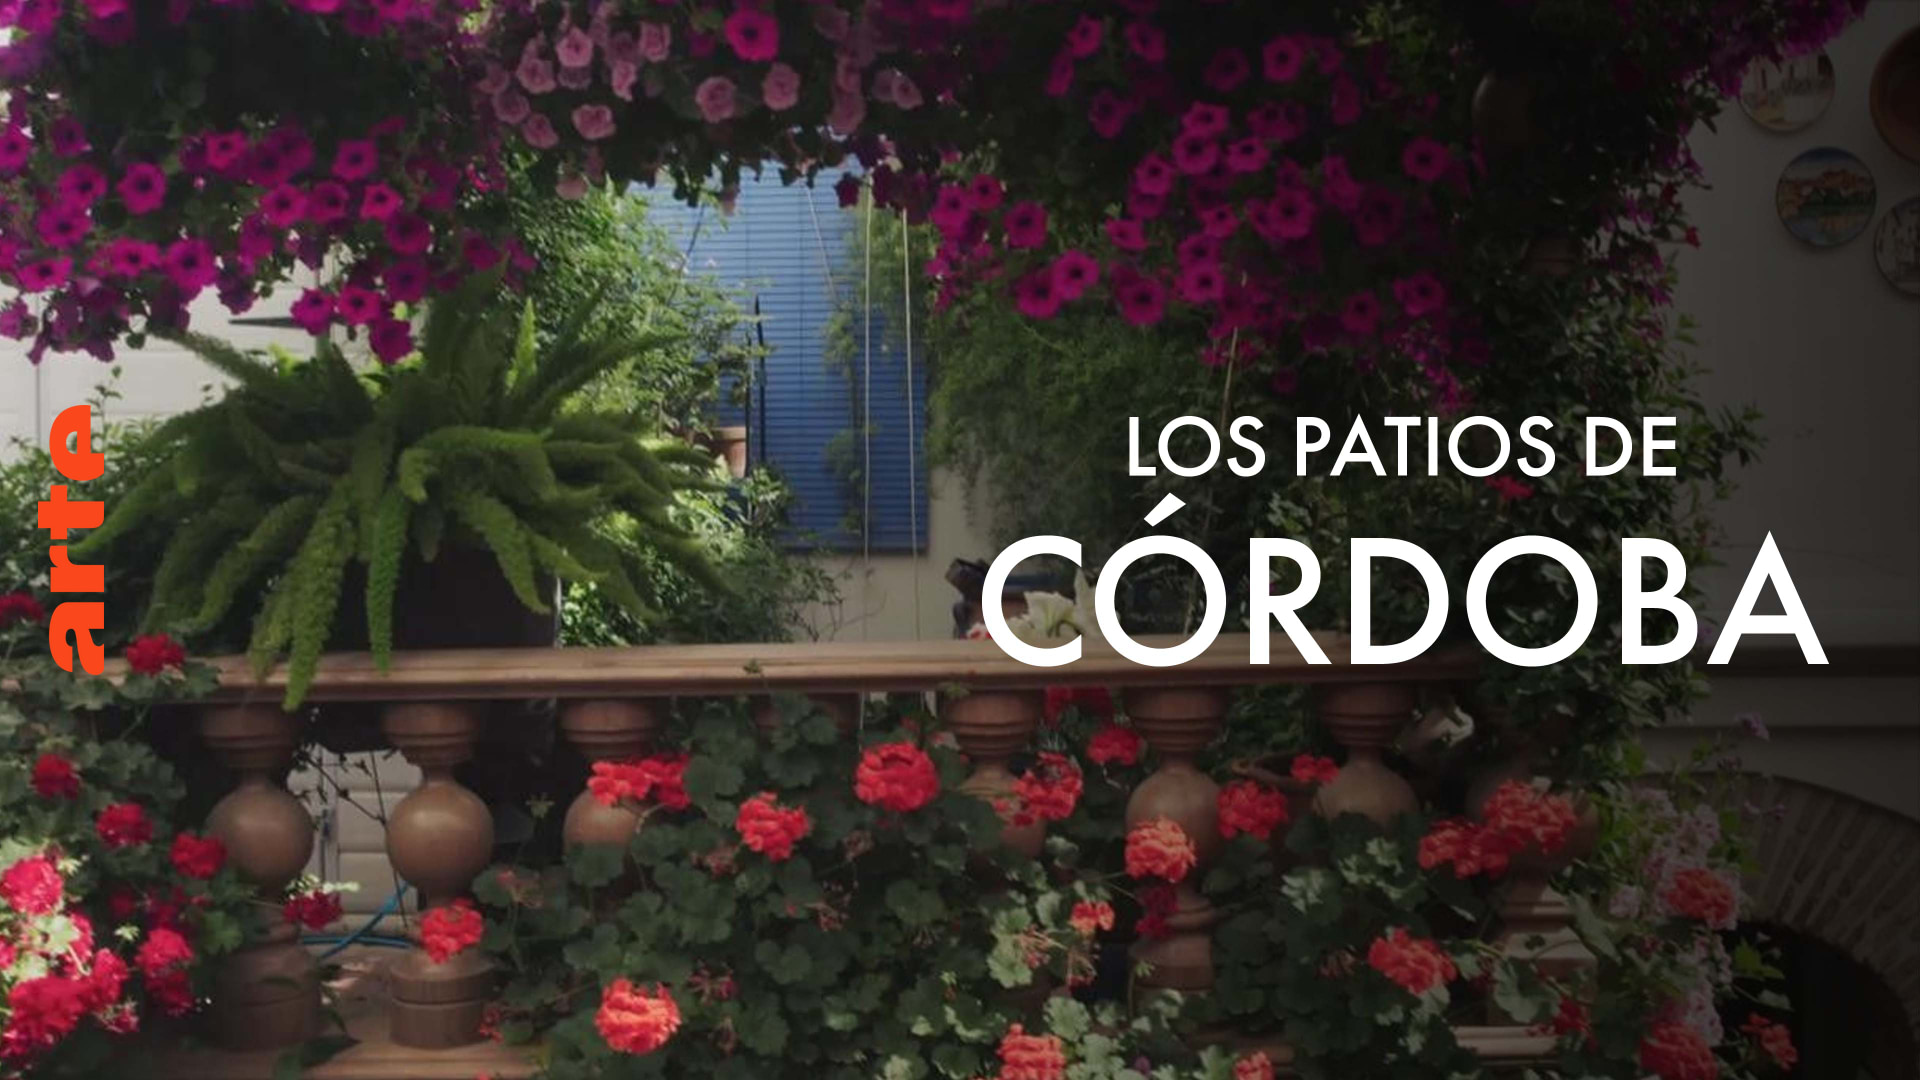 Caratula de 360° Reportage - Cordoba, die Stadt der Patios (360° Reportaje: Los patios de Córdoba) 